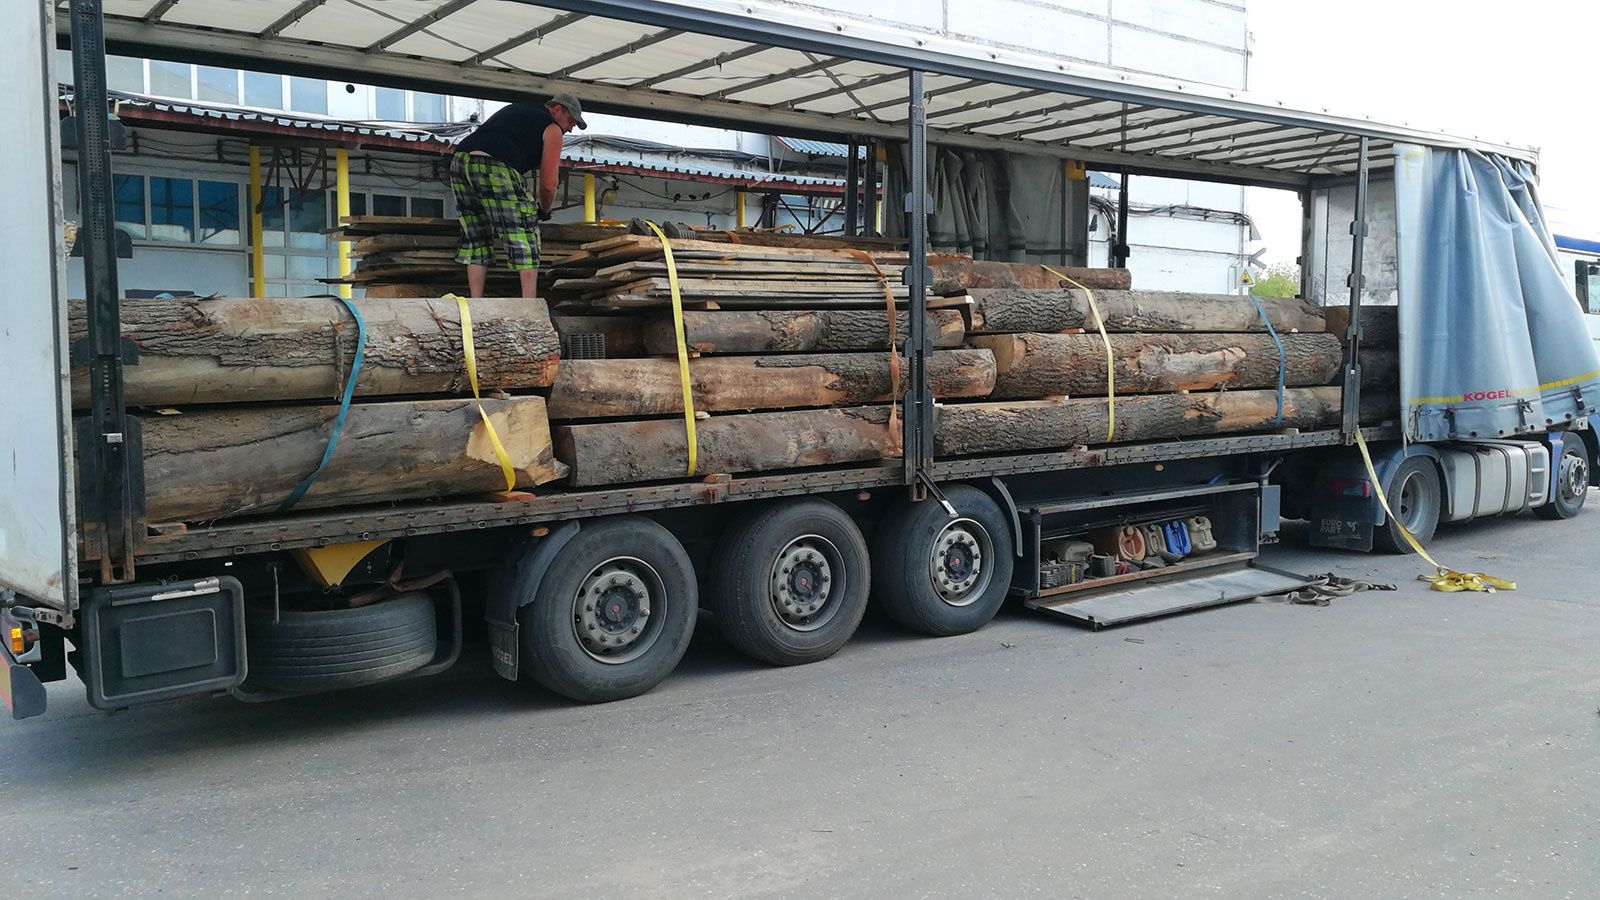 Вантажні перевезення по Україні Грузоперевозки 1 - 22 тонн